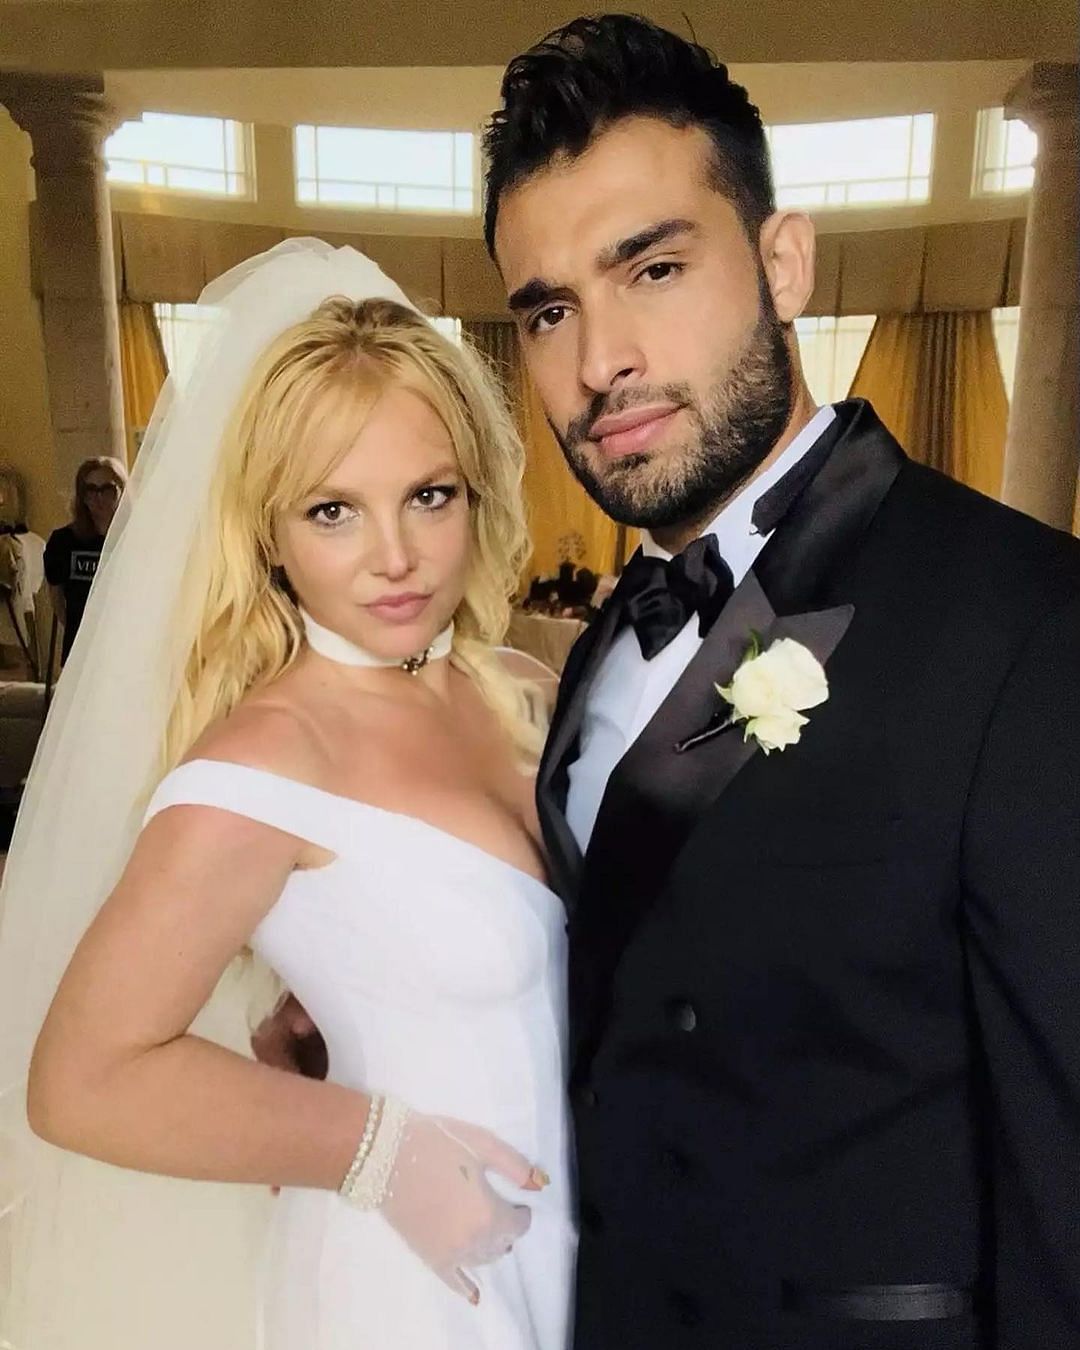 Britney Spears ने अपनी शादी के मौके पर डोनाटेला वर्साचे का डिजाइन किया हुआ सफेद गाउन पहना.